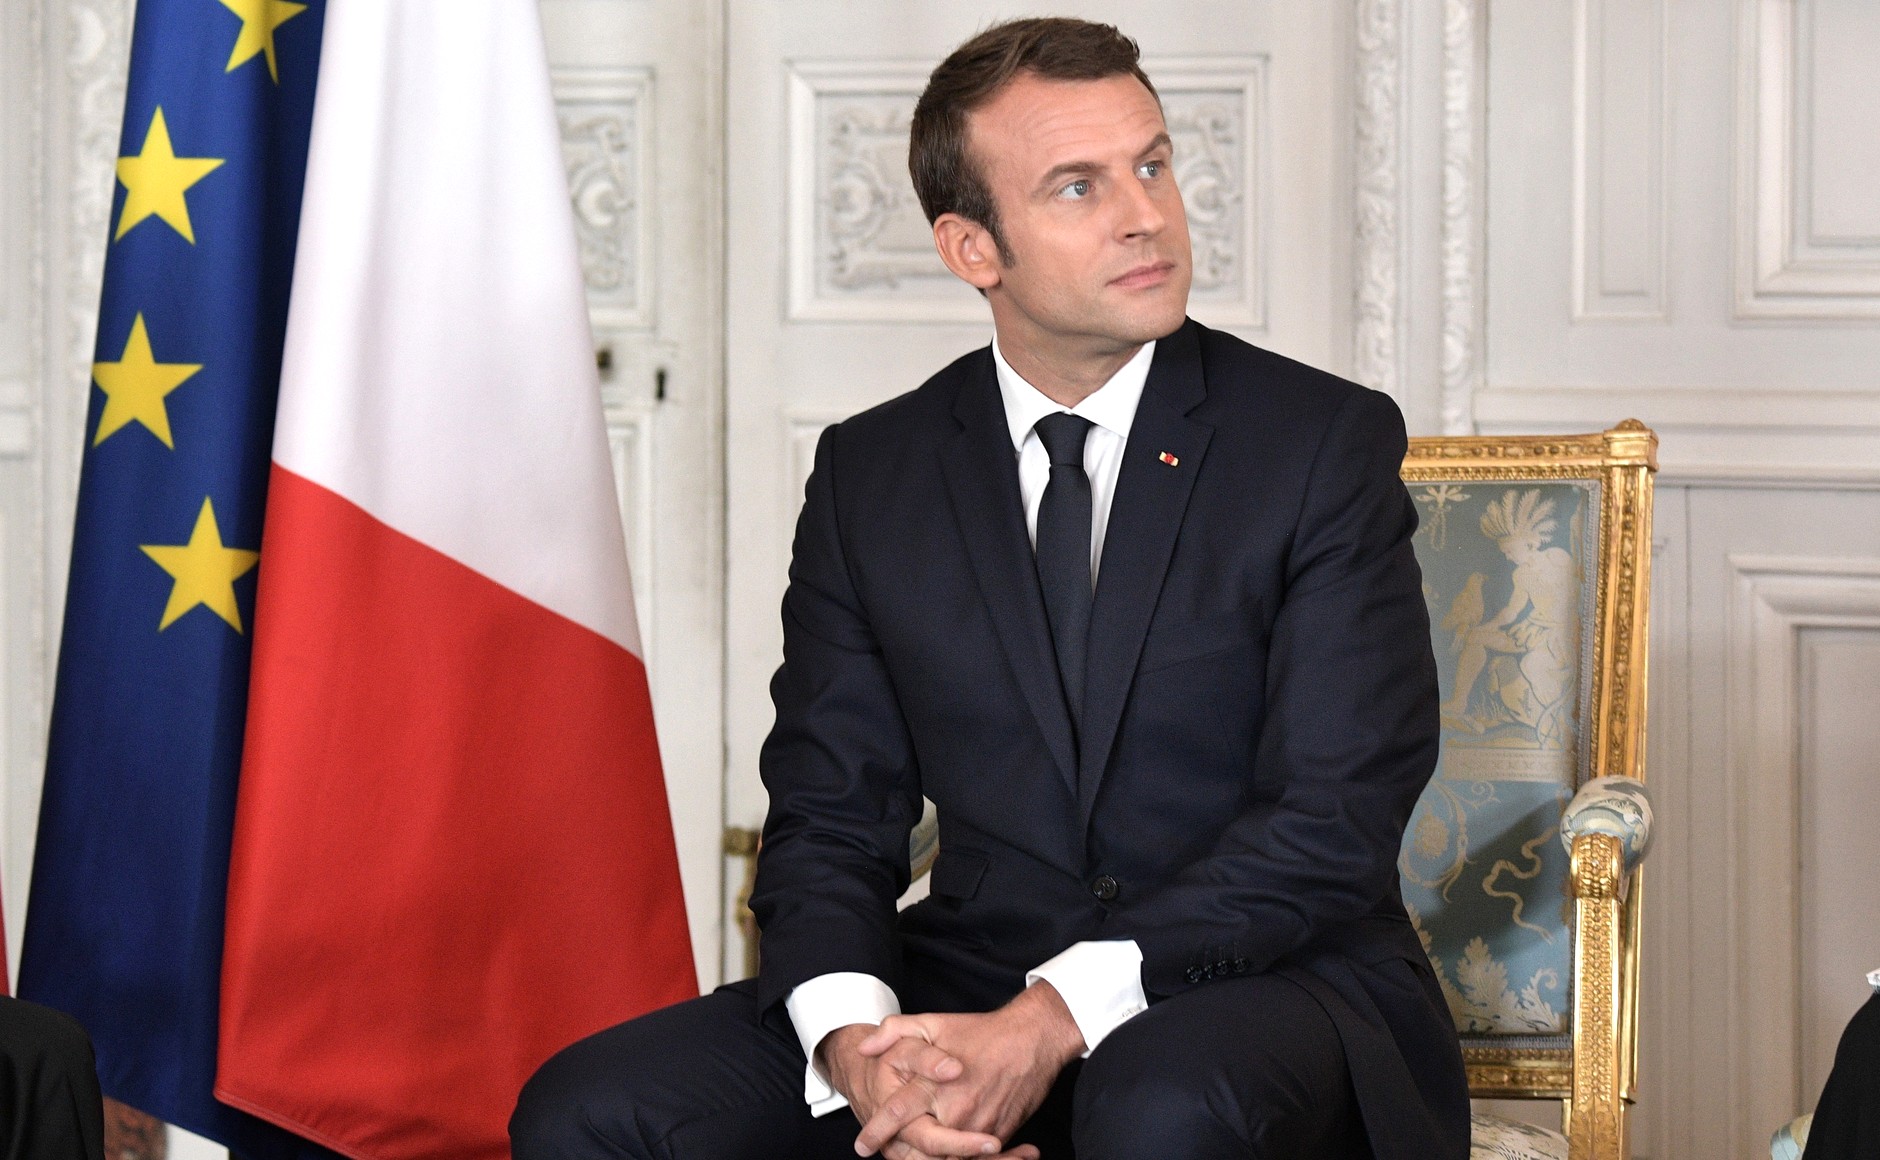     Emmanuel Macron officialise sa candidature à l'élection présidentielle

